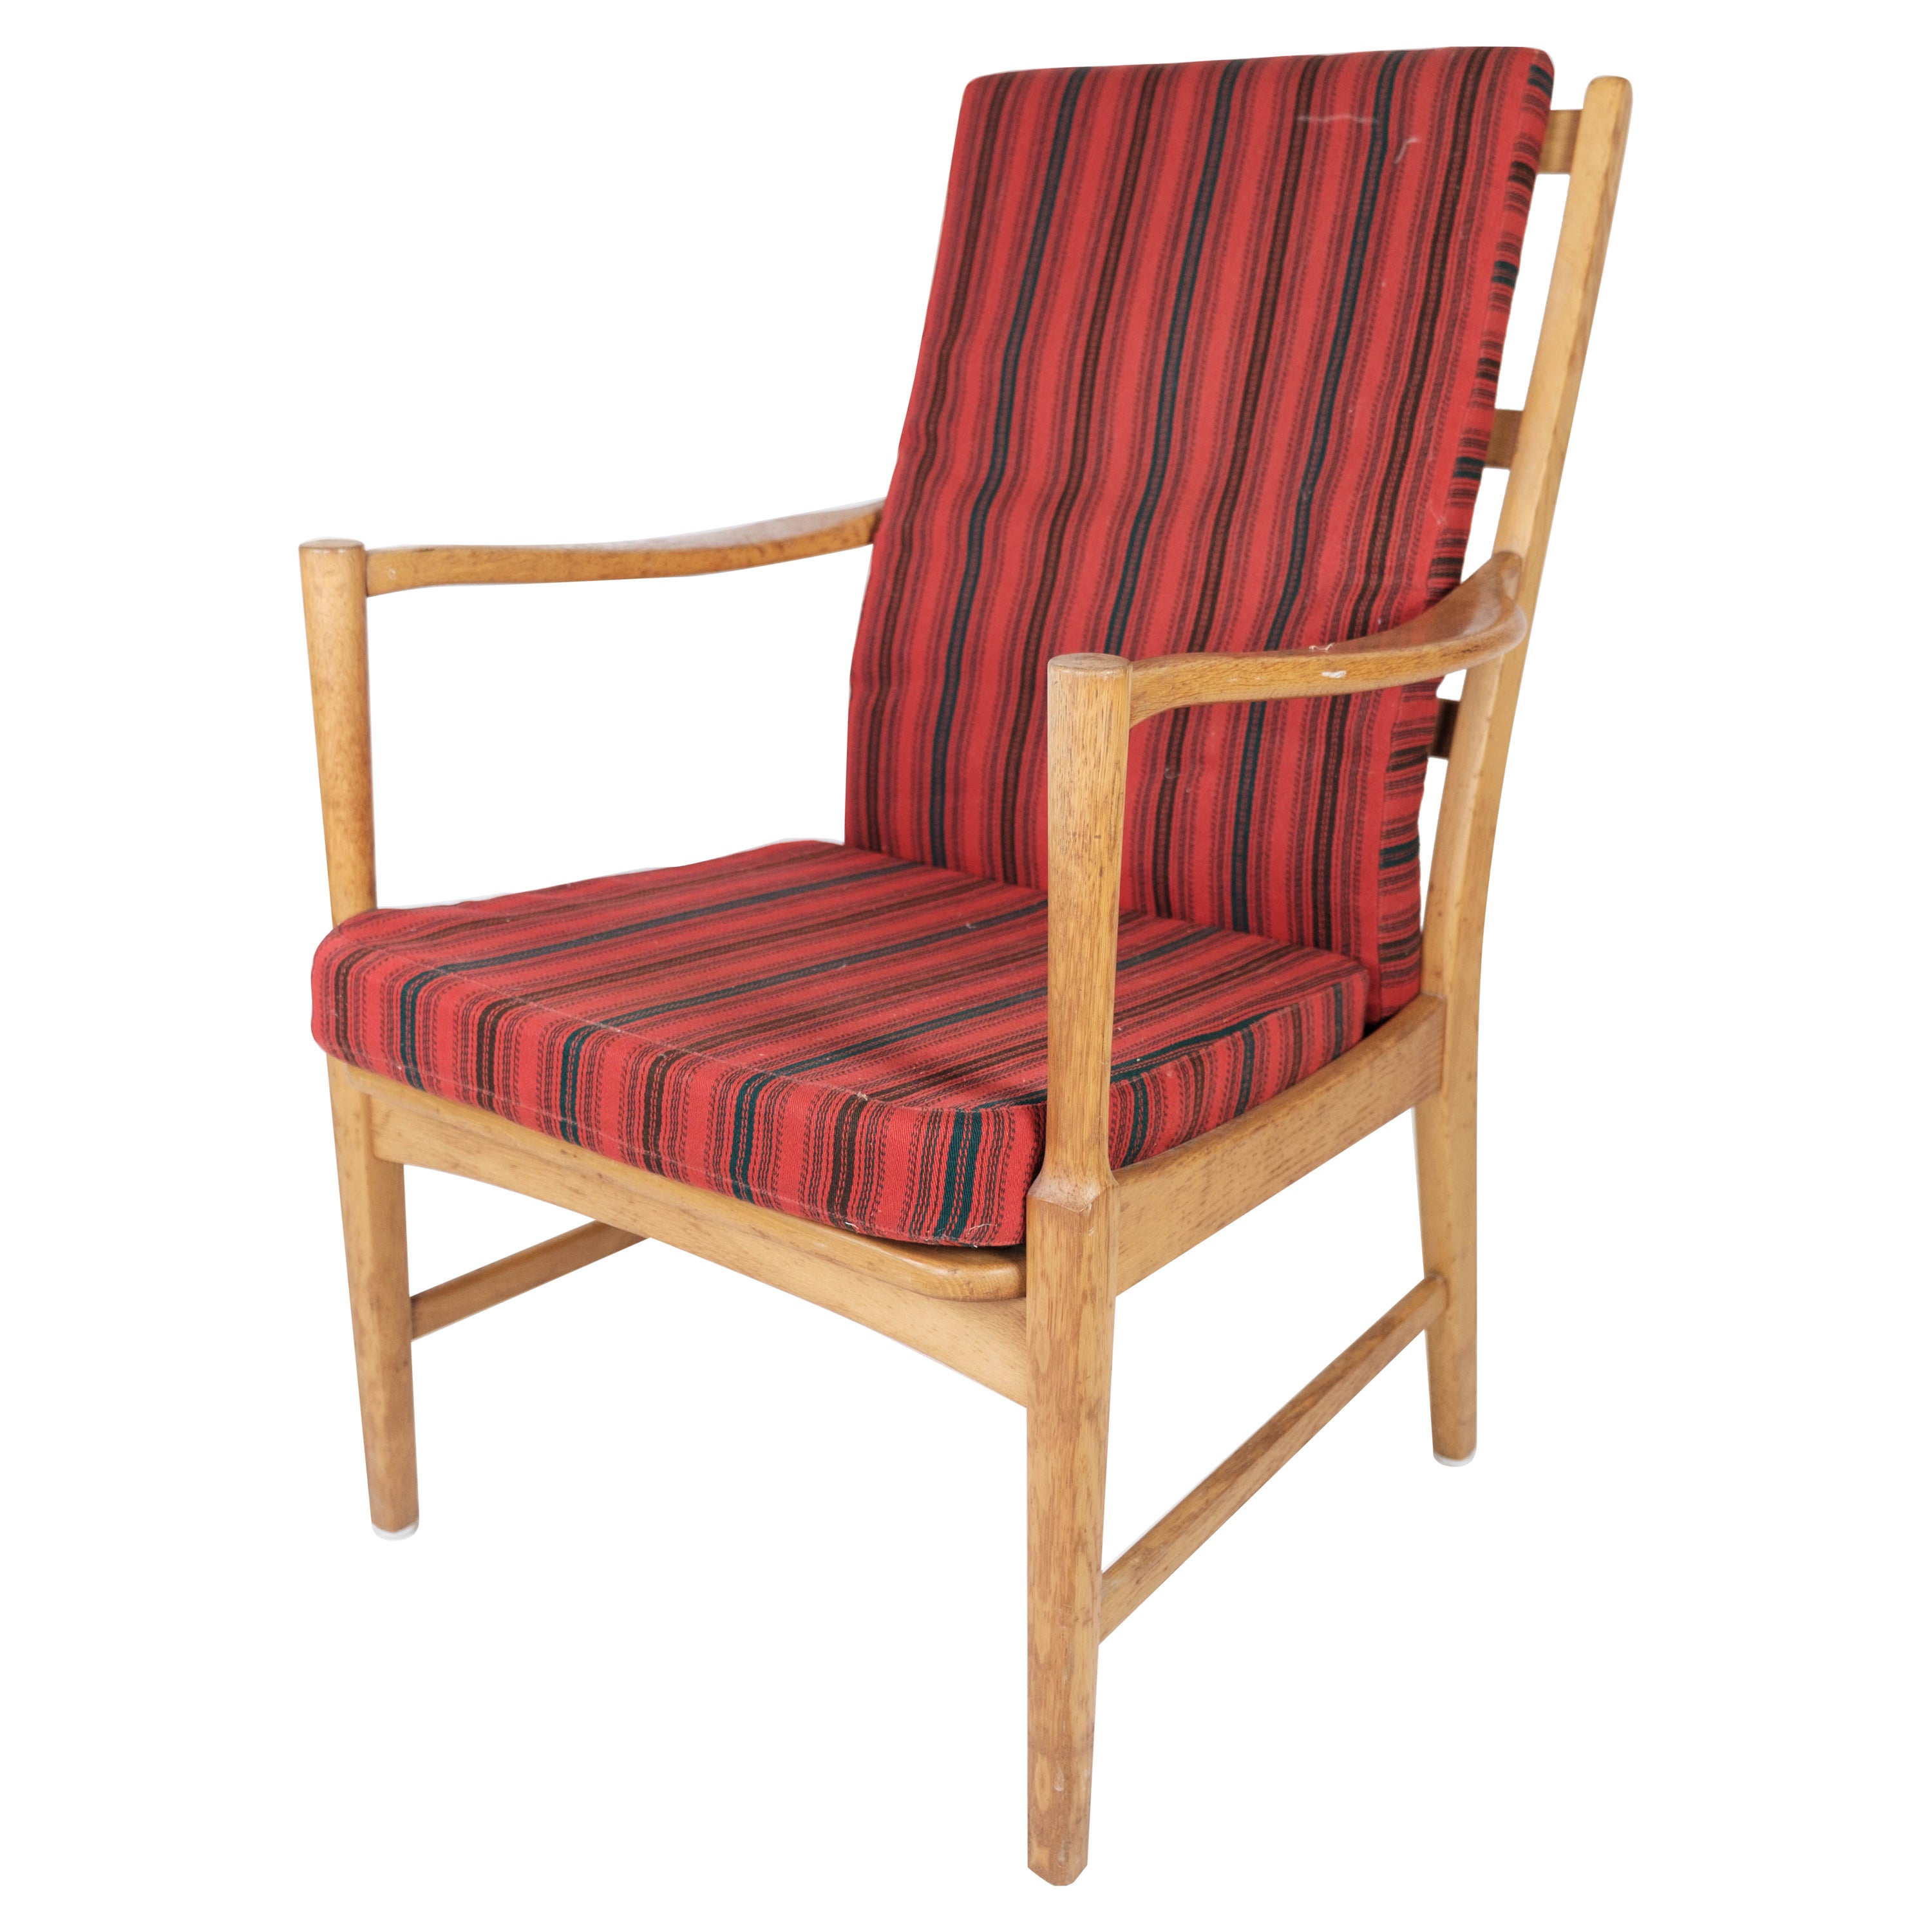 Sessel aus Eiche in schwedischem Design, hergestellt von Bjrnums Furniture, 1960er Jahre